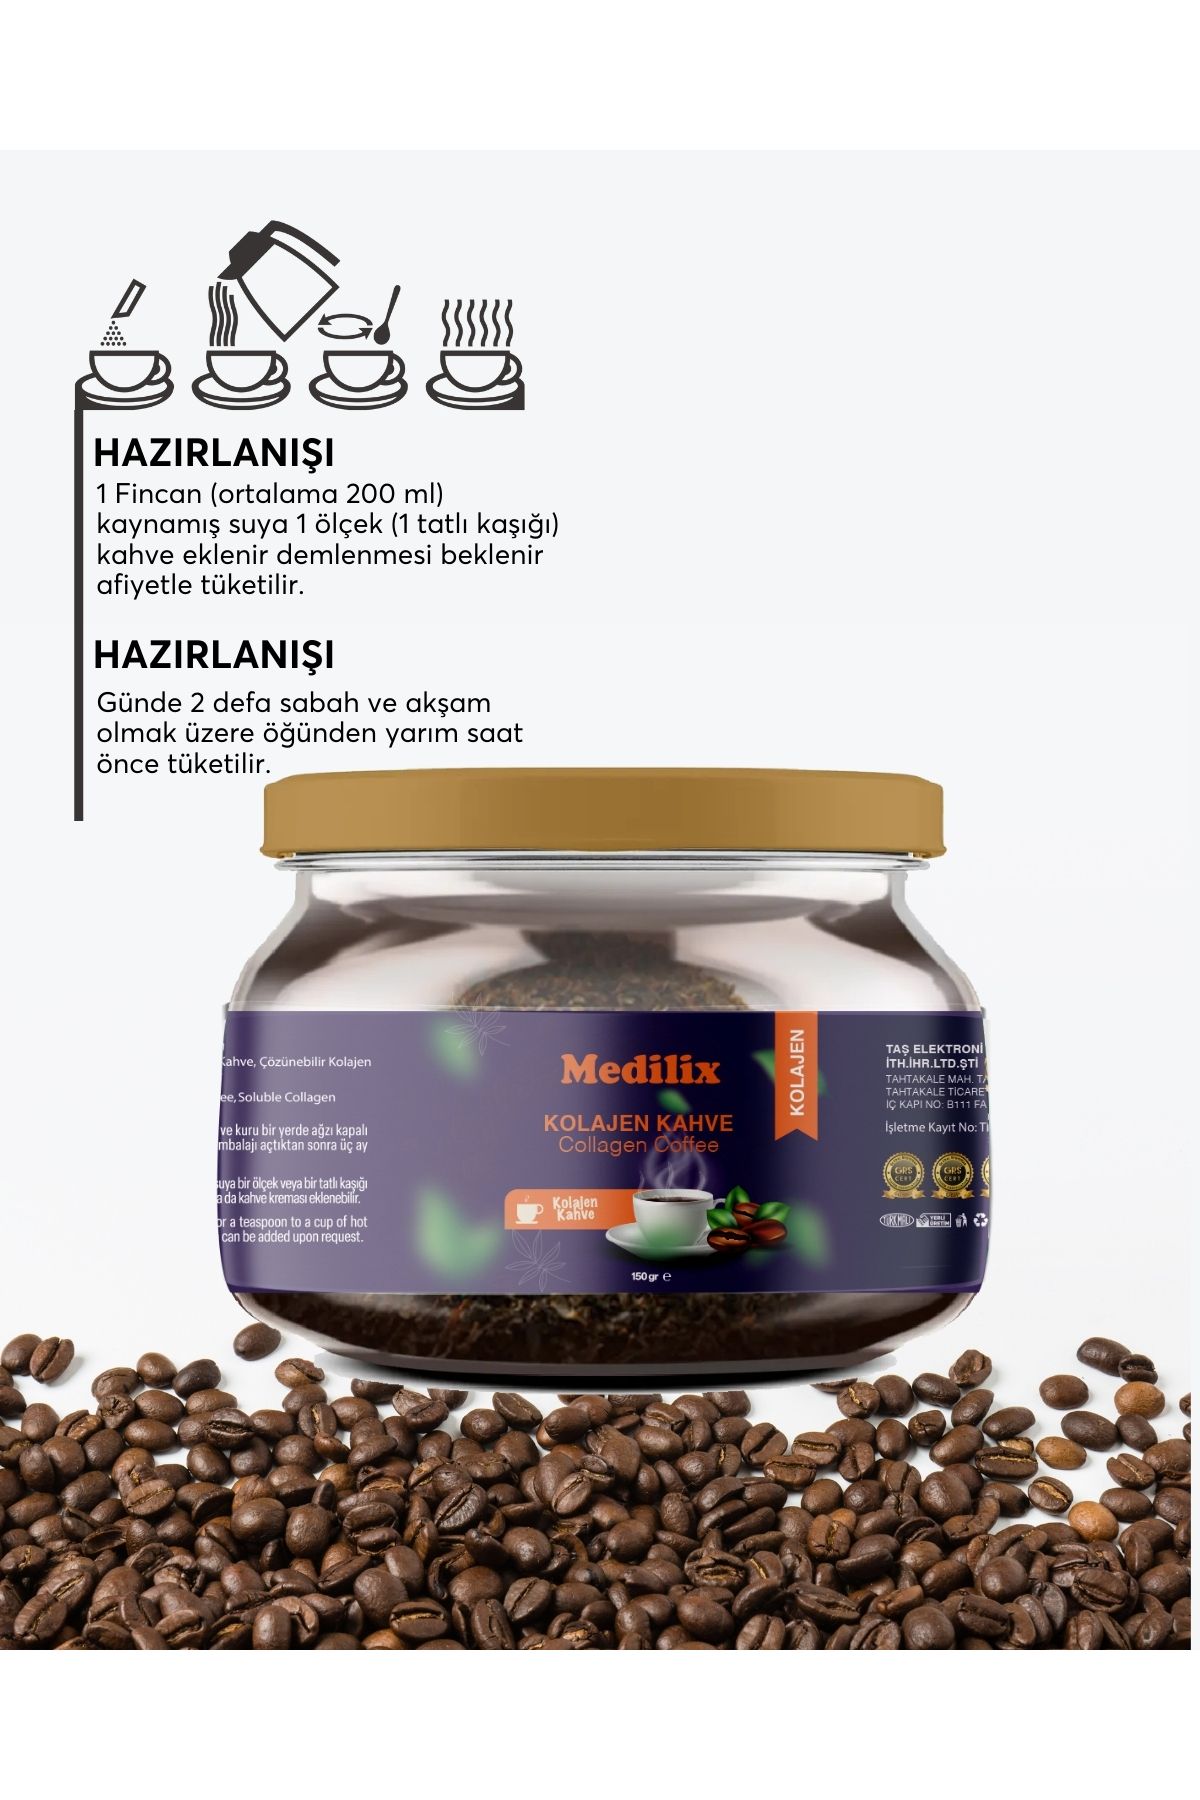 Medilix Kahve Kolajen Kahve Özel Harmanlanmış Kolajen Kahvesi 150 gr (60 Kullanımlık 1 Aylık )